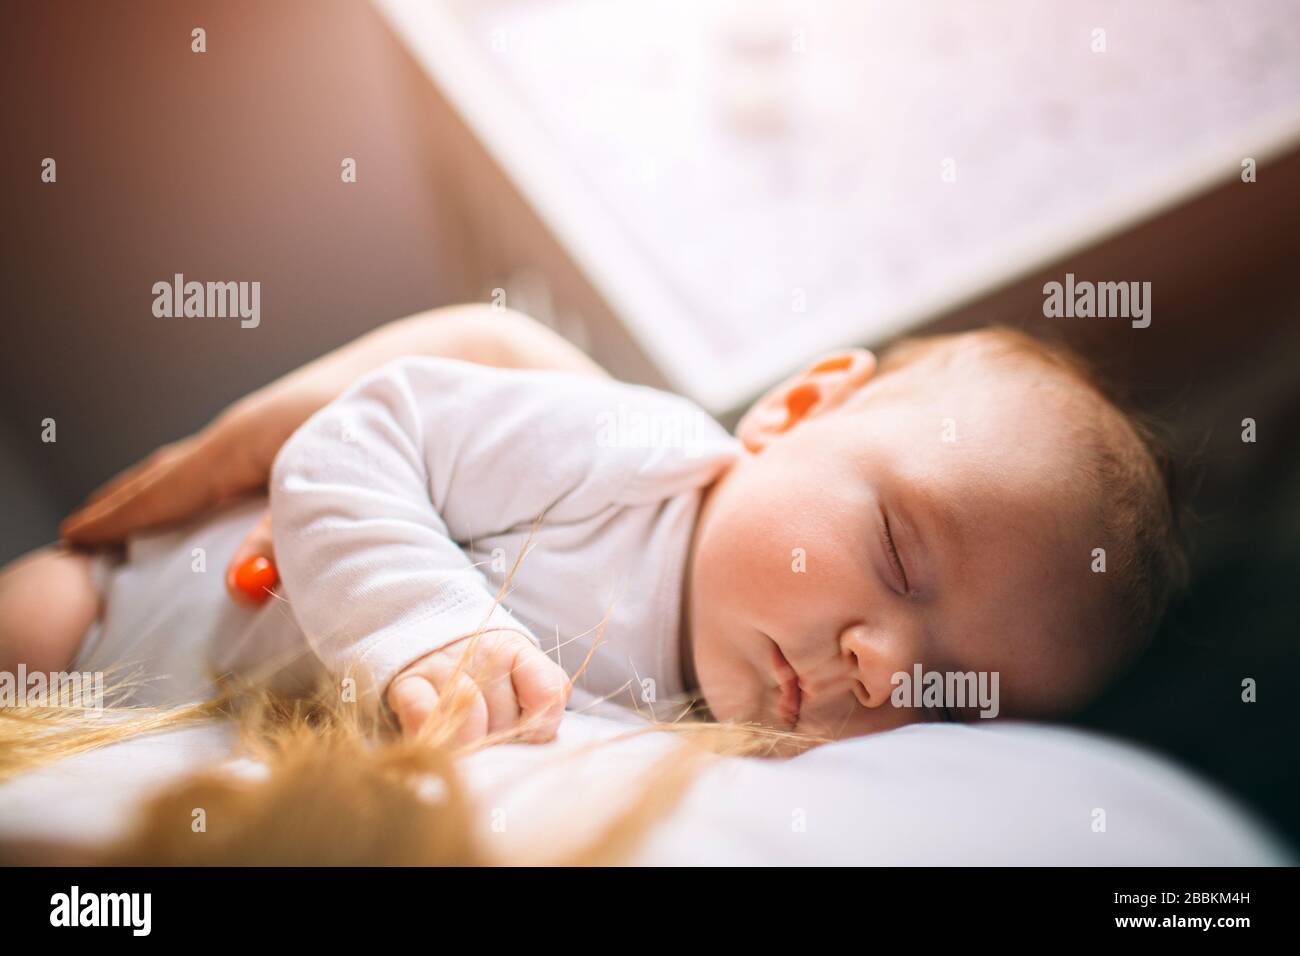 Porträt eines Neugeborenen. Mutter hält ein Kind in den Armen. Das erste Lebensjahr. Pflege und Gesundheit. Stockfoto